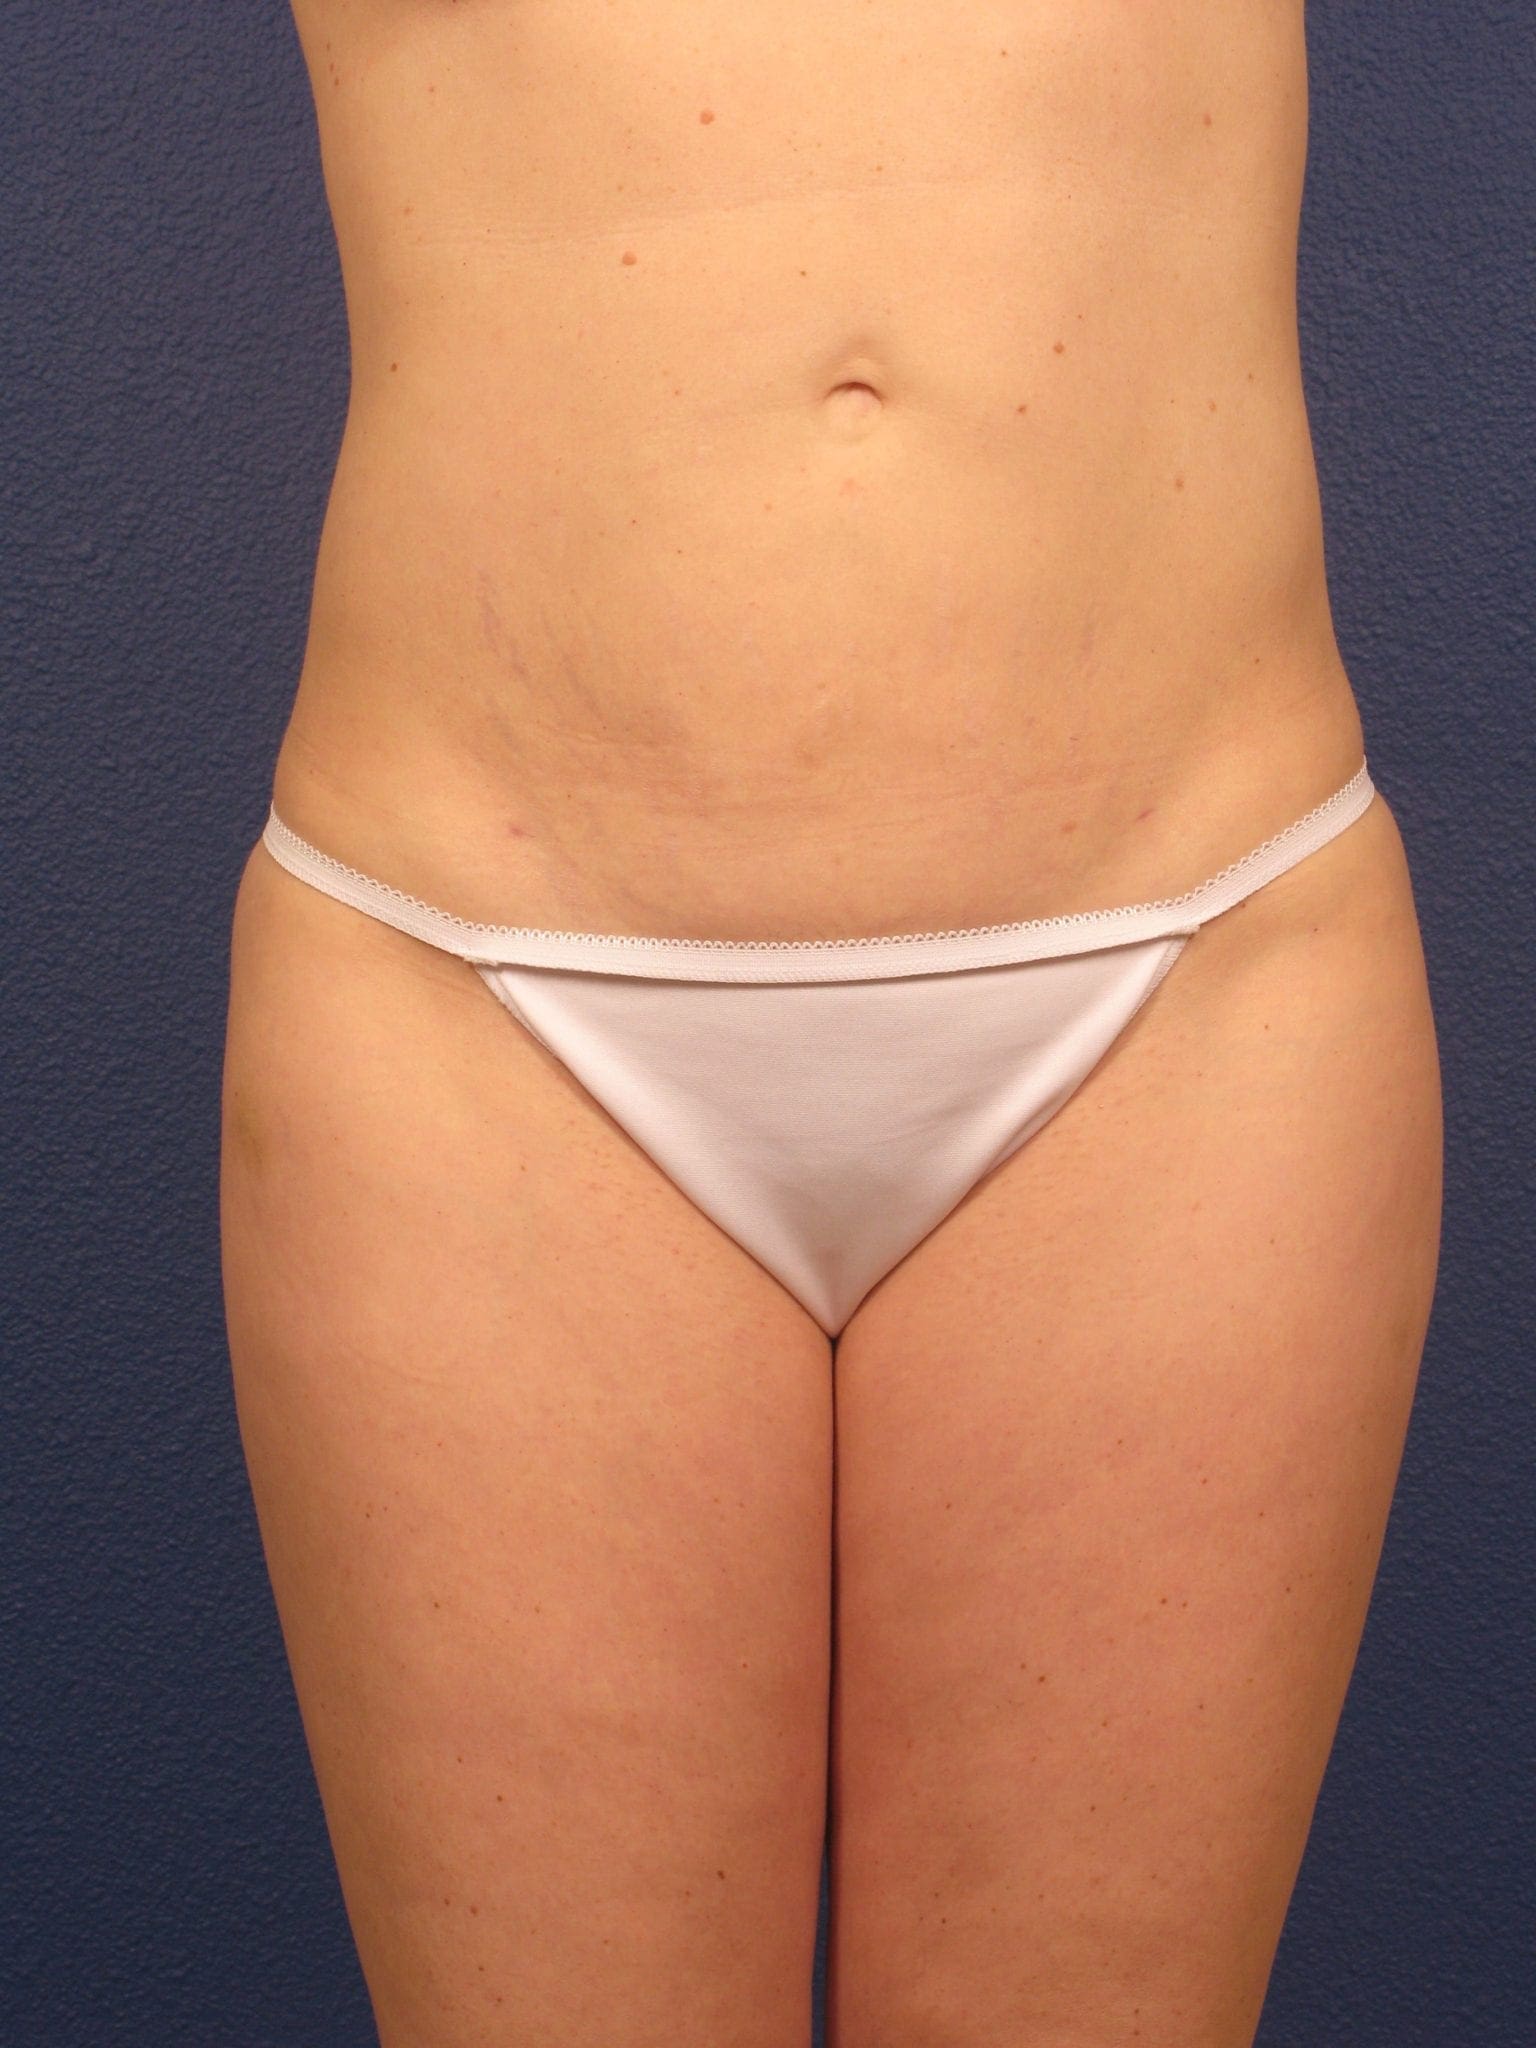 Liposuction Patient Photo - Case 166 - after view